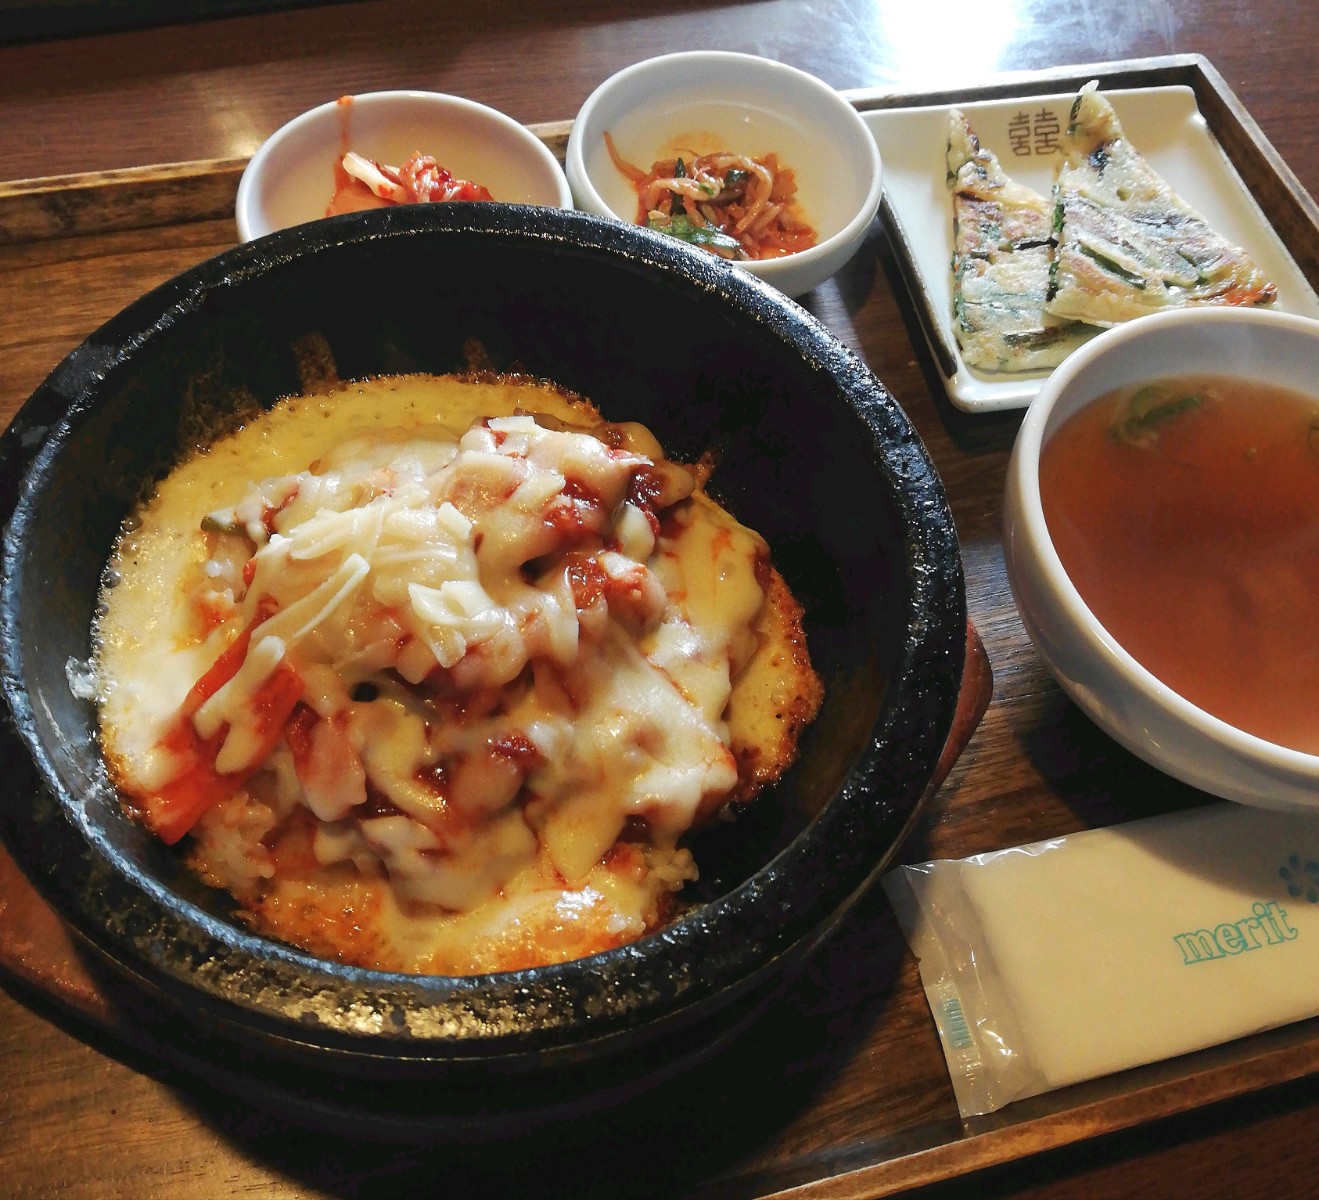 サランバン豊田元宮店でランチ 人気の韓国料理店でチーズタッカルビを味わいました 岡崎にゅーす